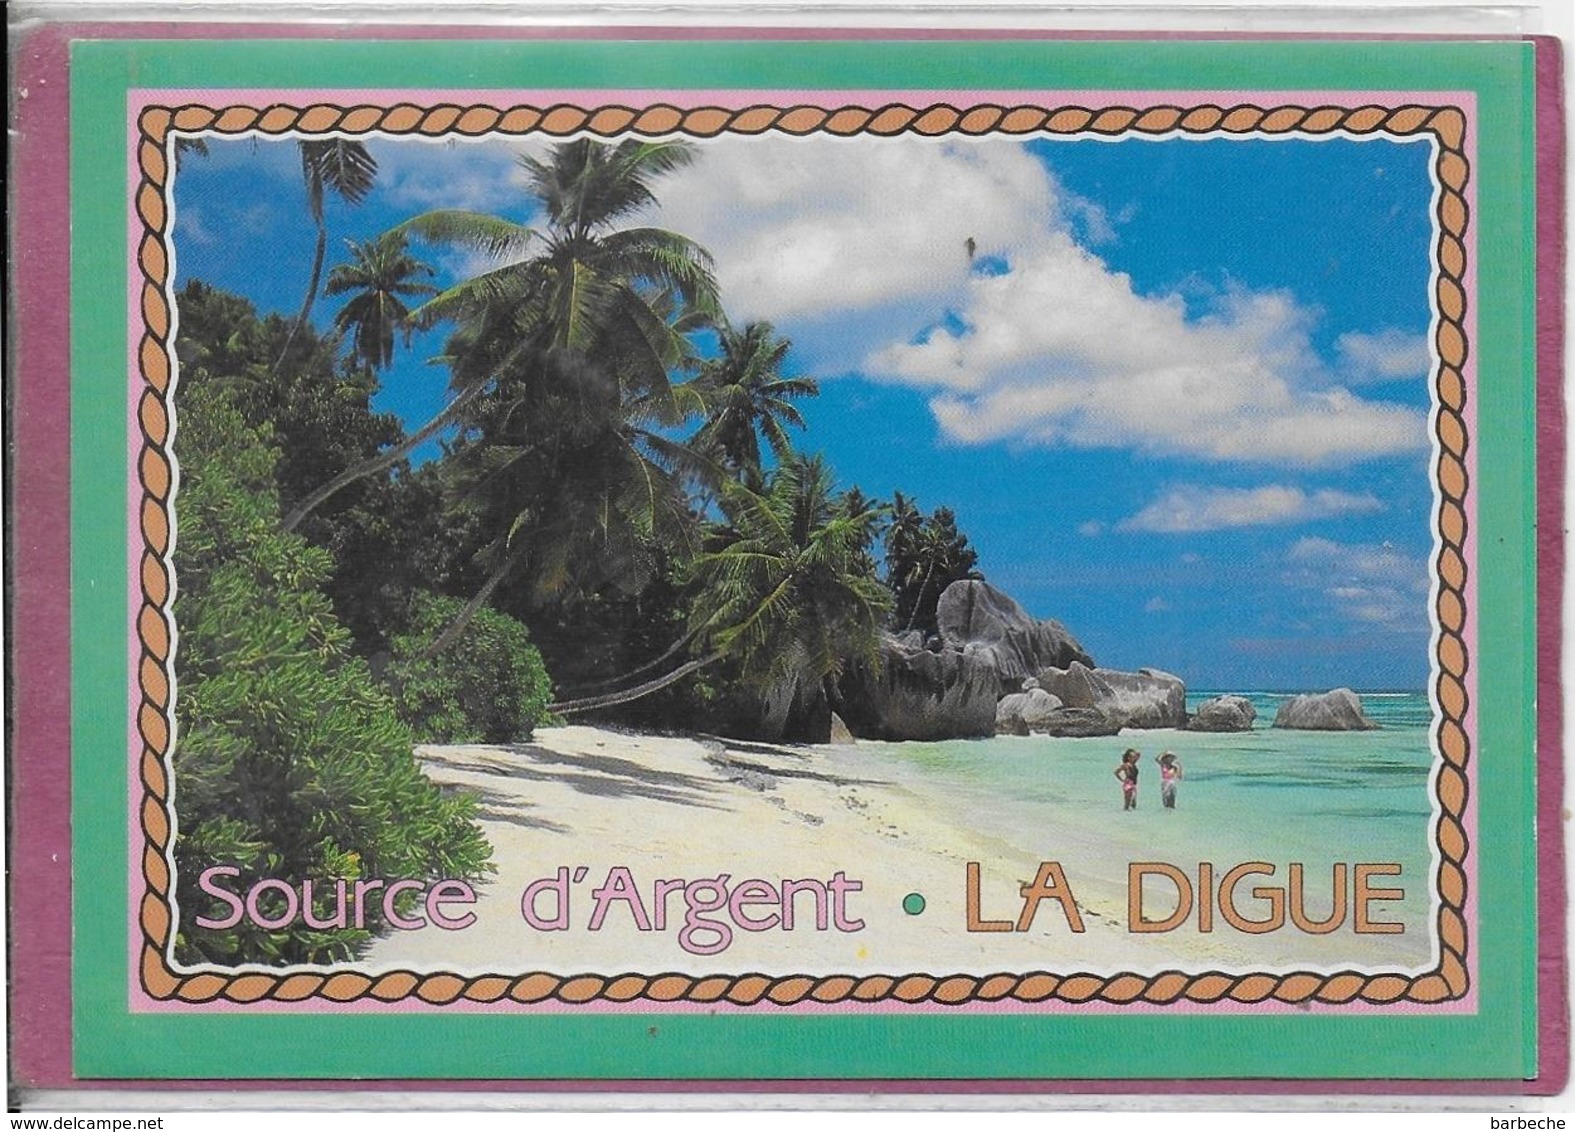 SEYCHELLES - SOURCE D' ARGENT LA DIGUE - Seychelles